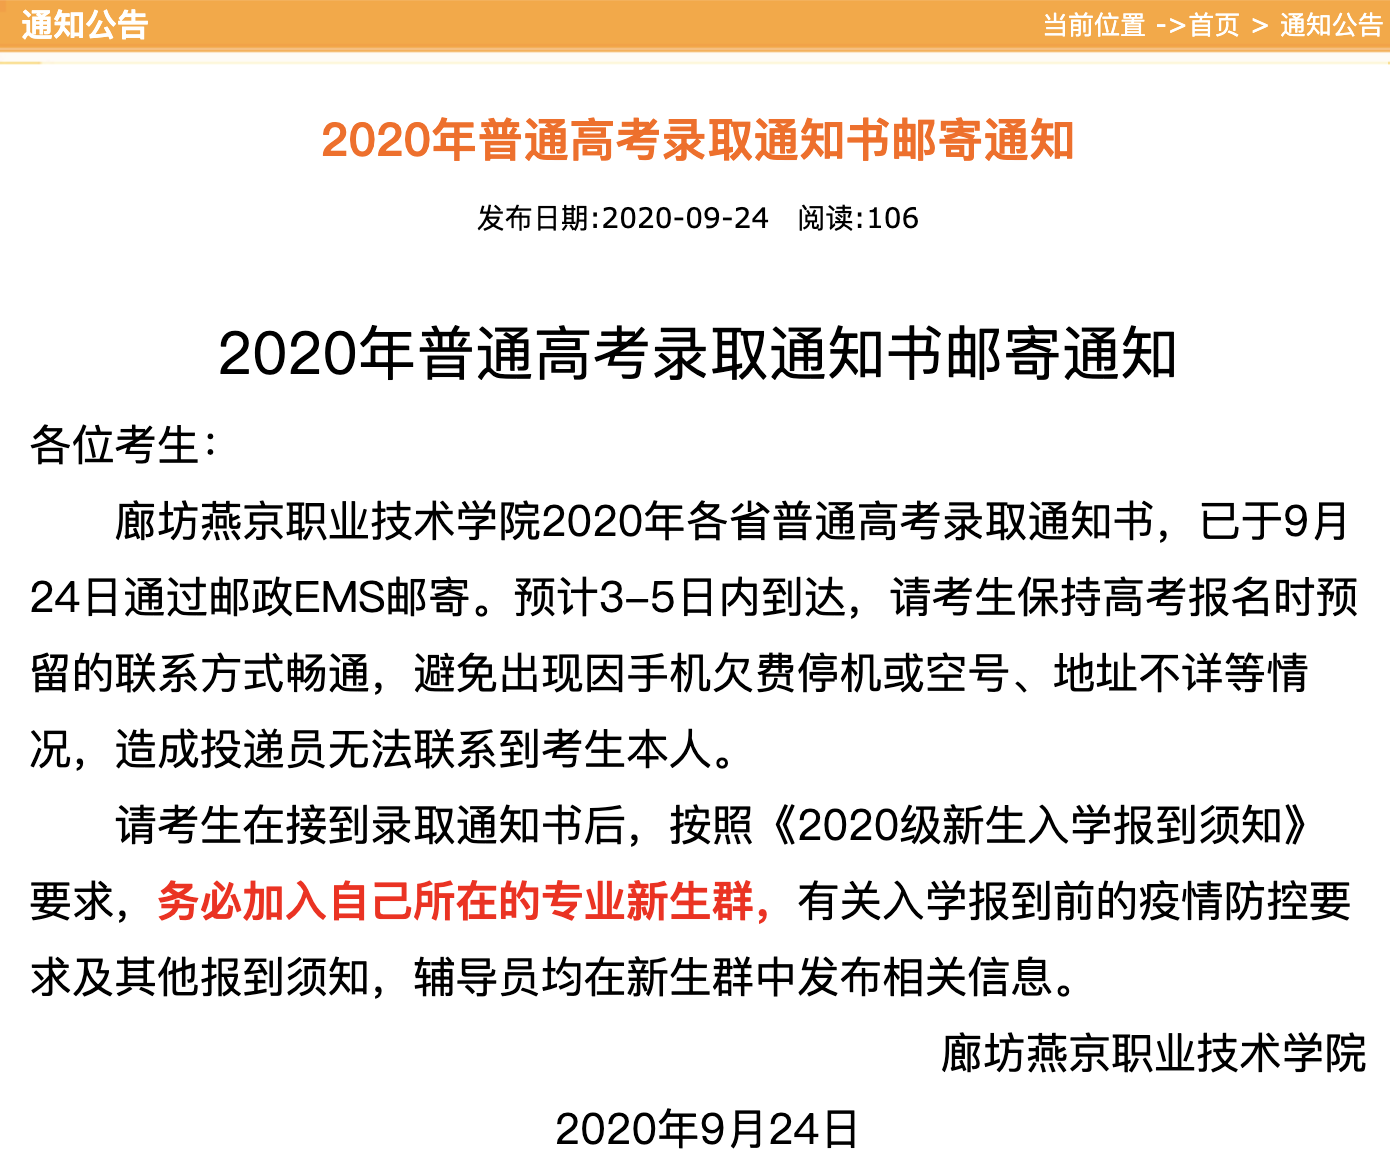 廊坊燕京职业技术学院2020年普通高考录取通知书邮寄通知